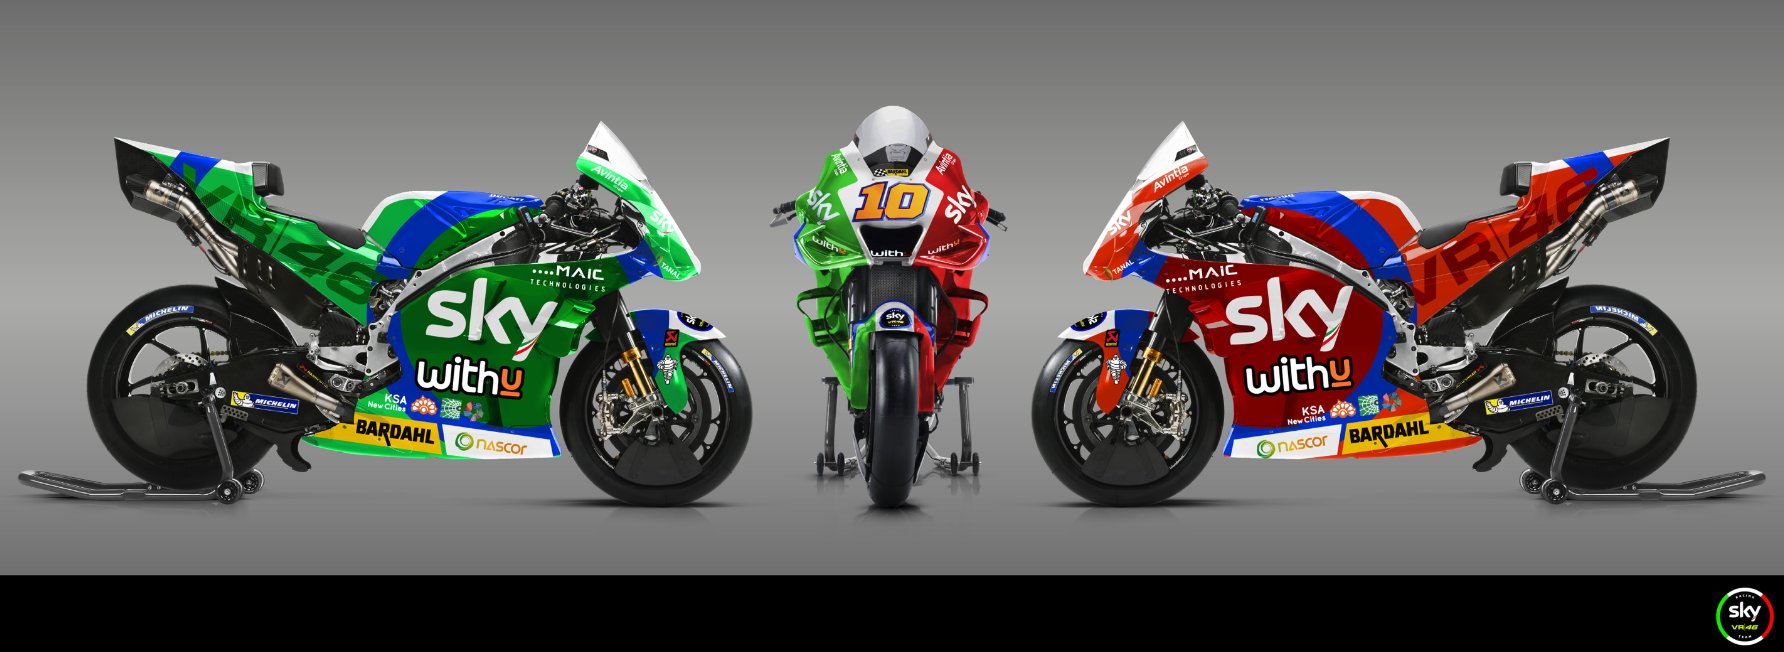 motogp - Moto GP 2021 - Page 15 E2ONviUXoAI0QRI?format=jpg&name=large